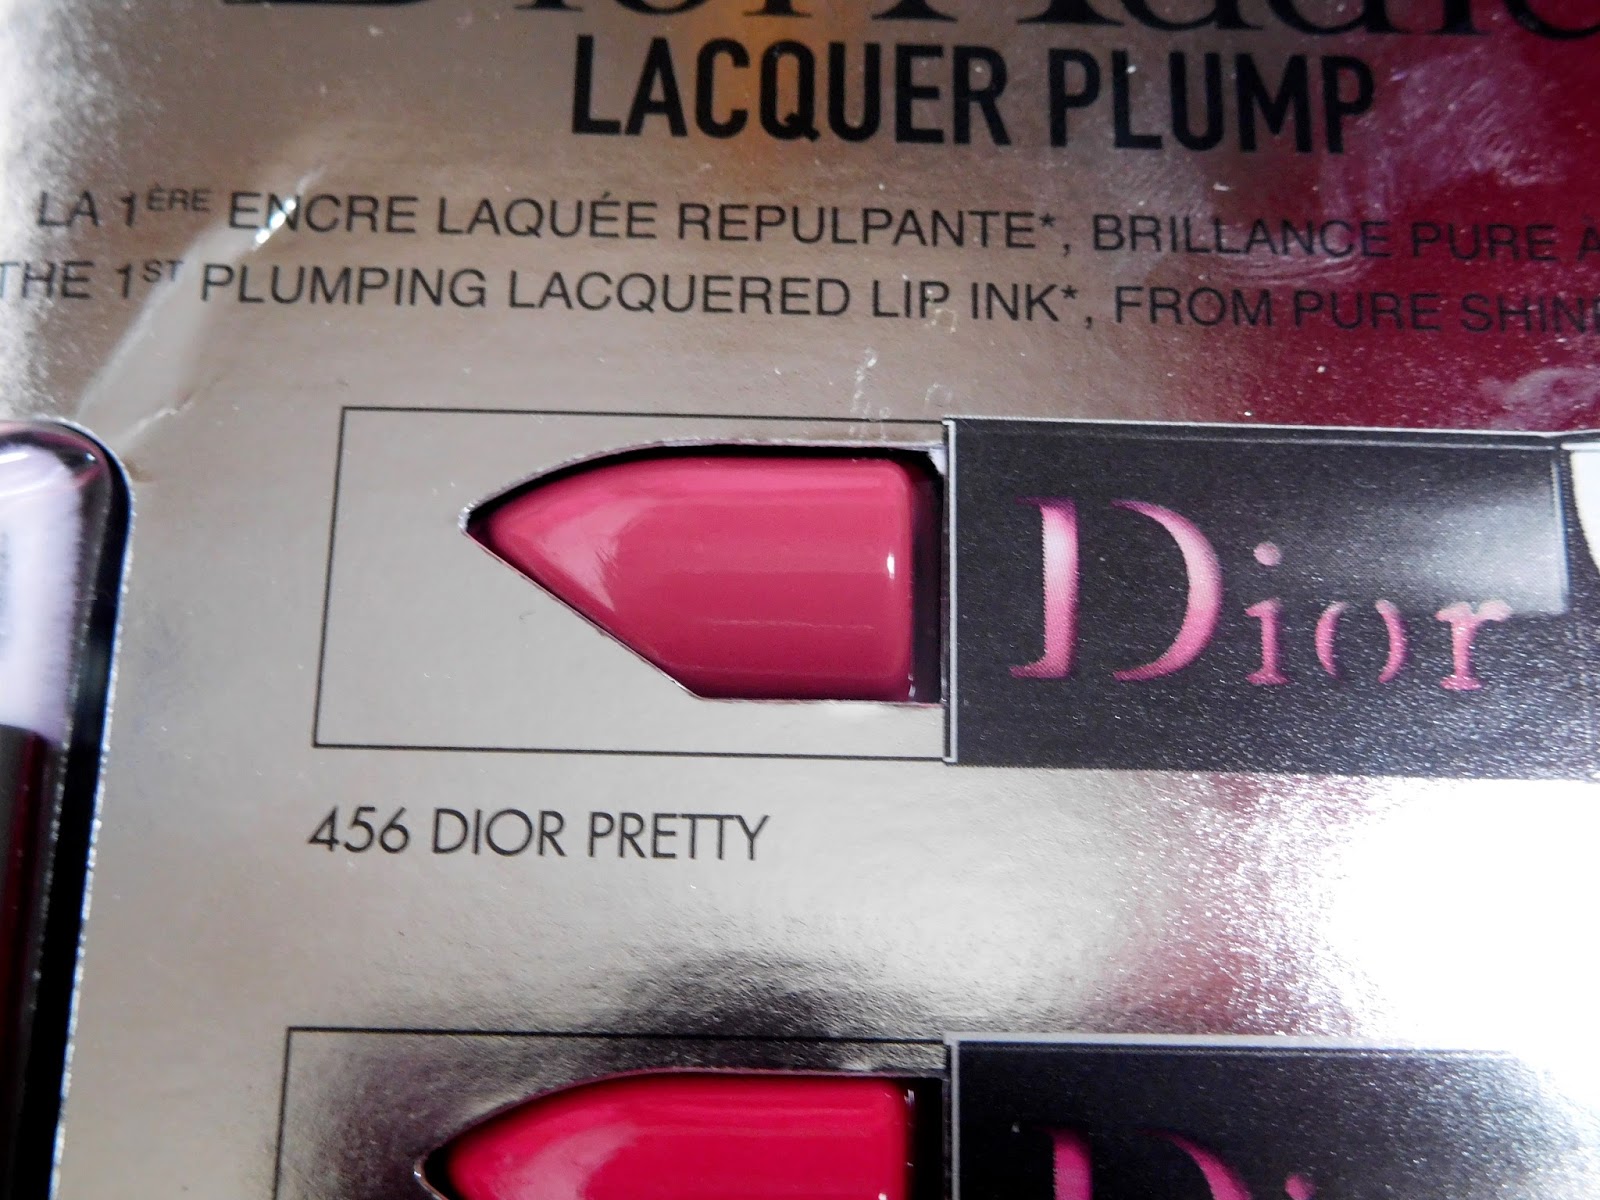 dior pretty lip lacquer